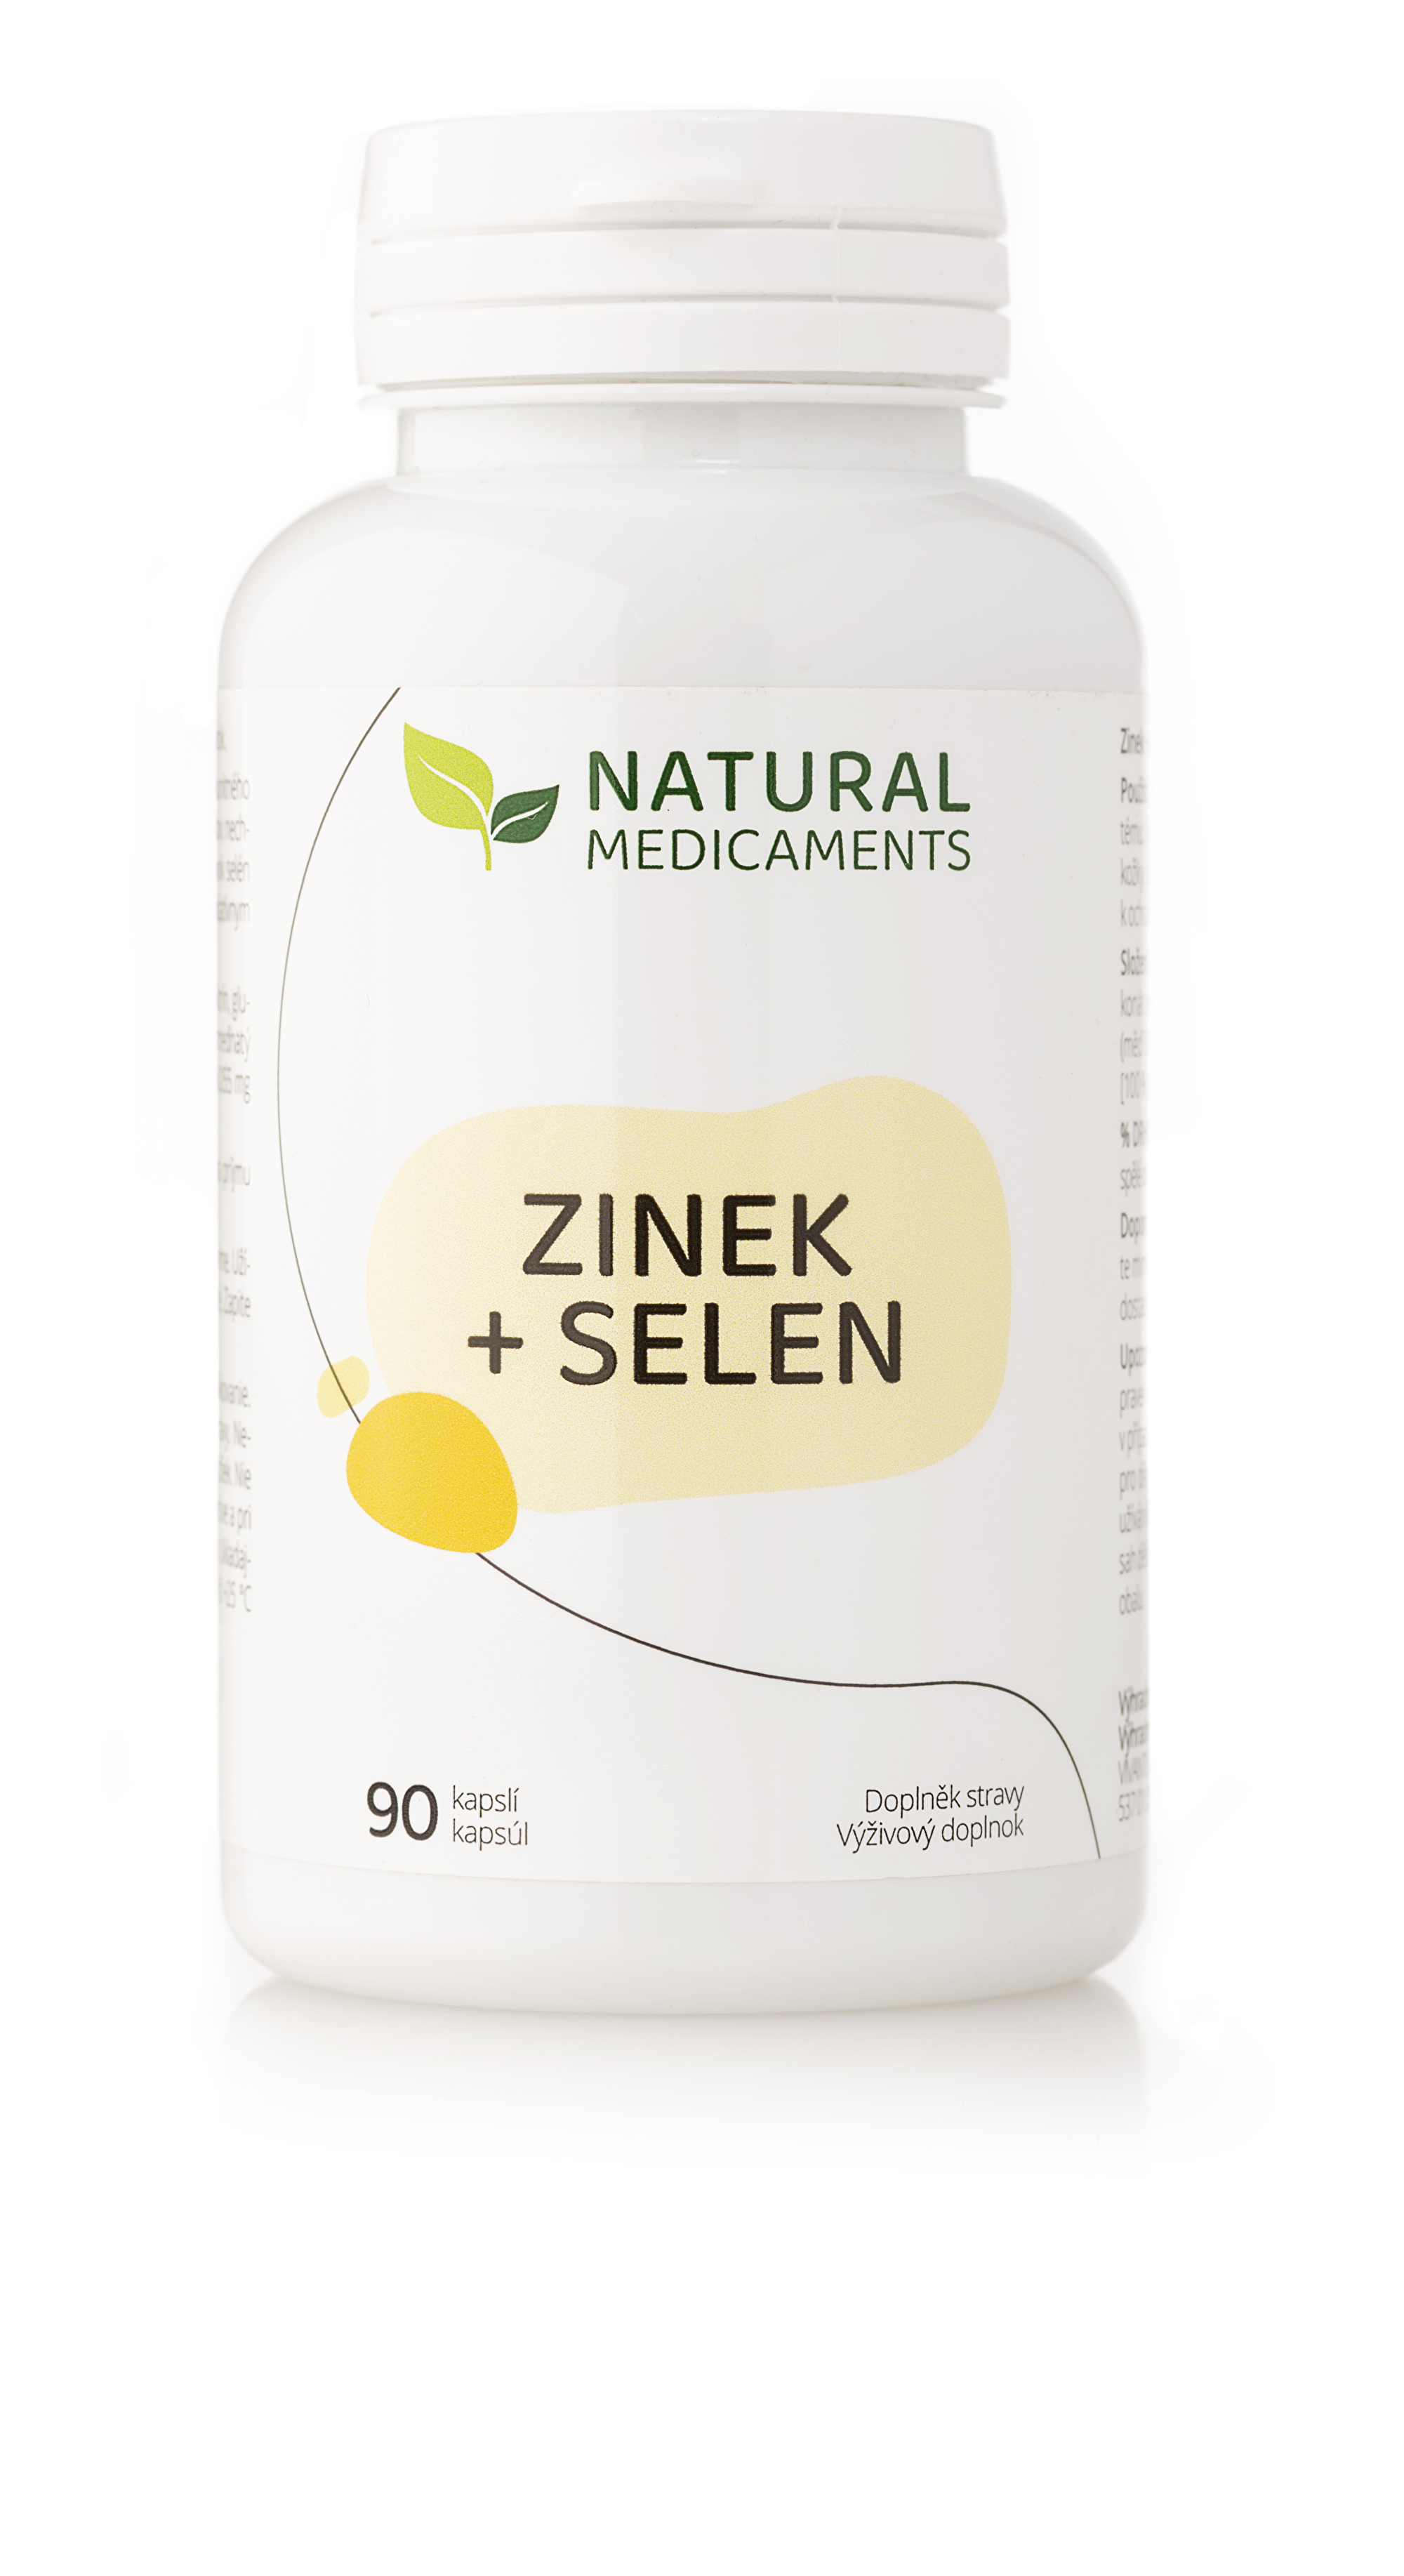 Natural Medicaments Zinek + selen 90 kapslí